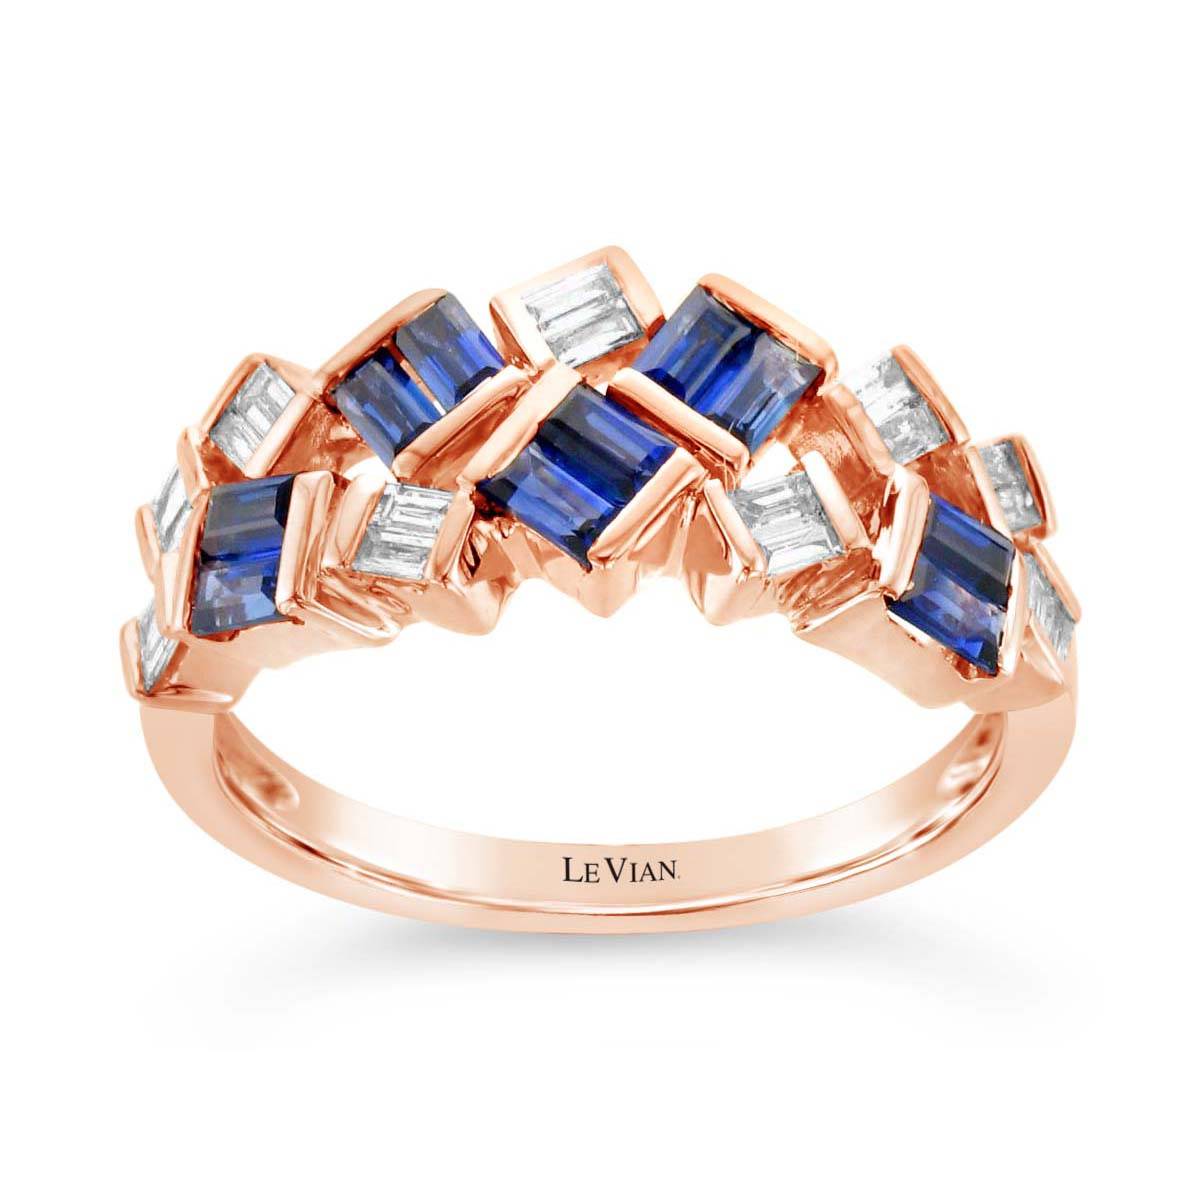 Le Vian(R) Blueberry Sapphire(tm) & Vanilla Diamonds(R) Baguette Ring